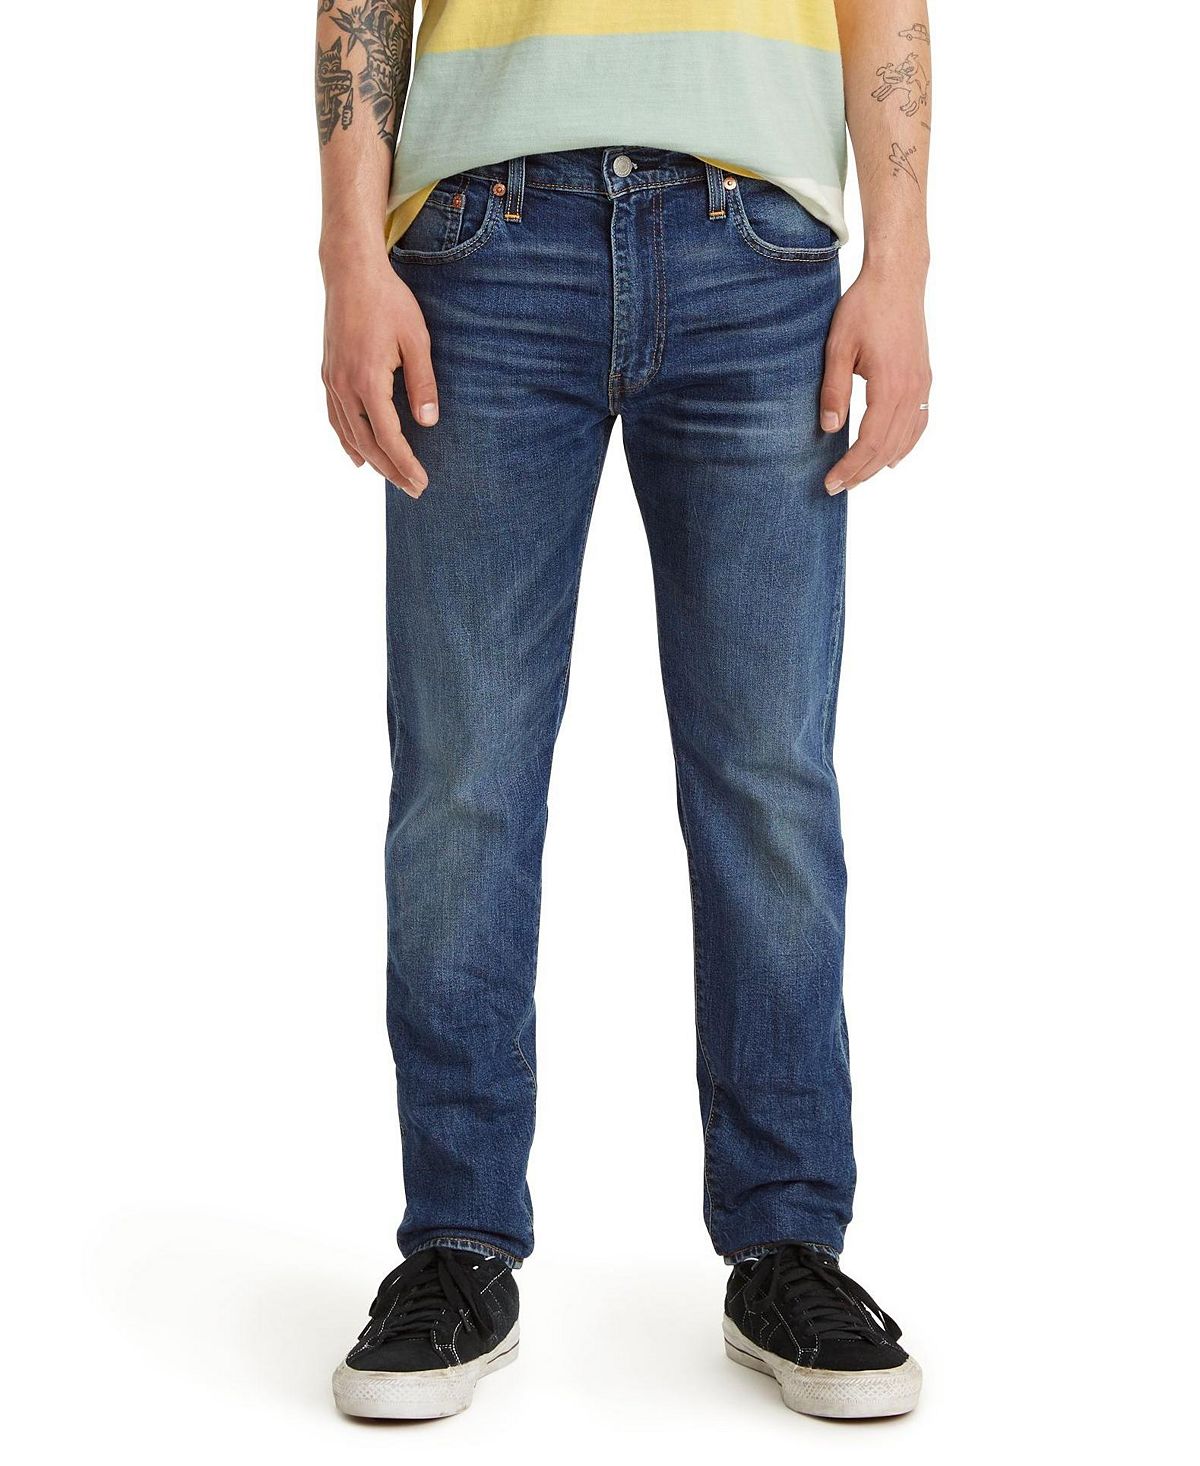 Мужские зауженные зауженные джинсы levi’s 512 flex Levi's, мульти узкие джинсы до щиколотки h